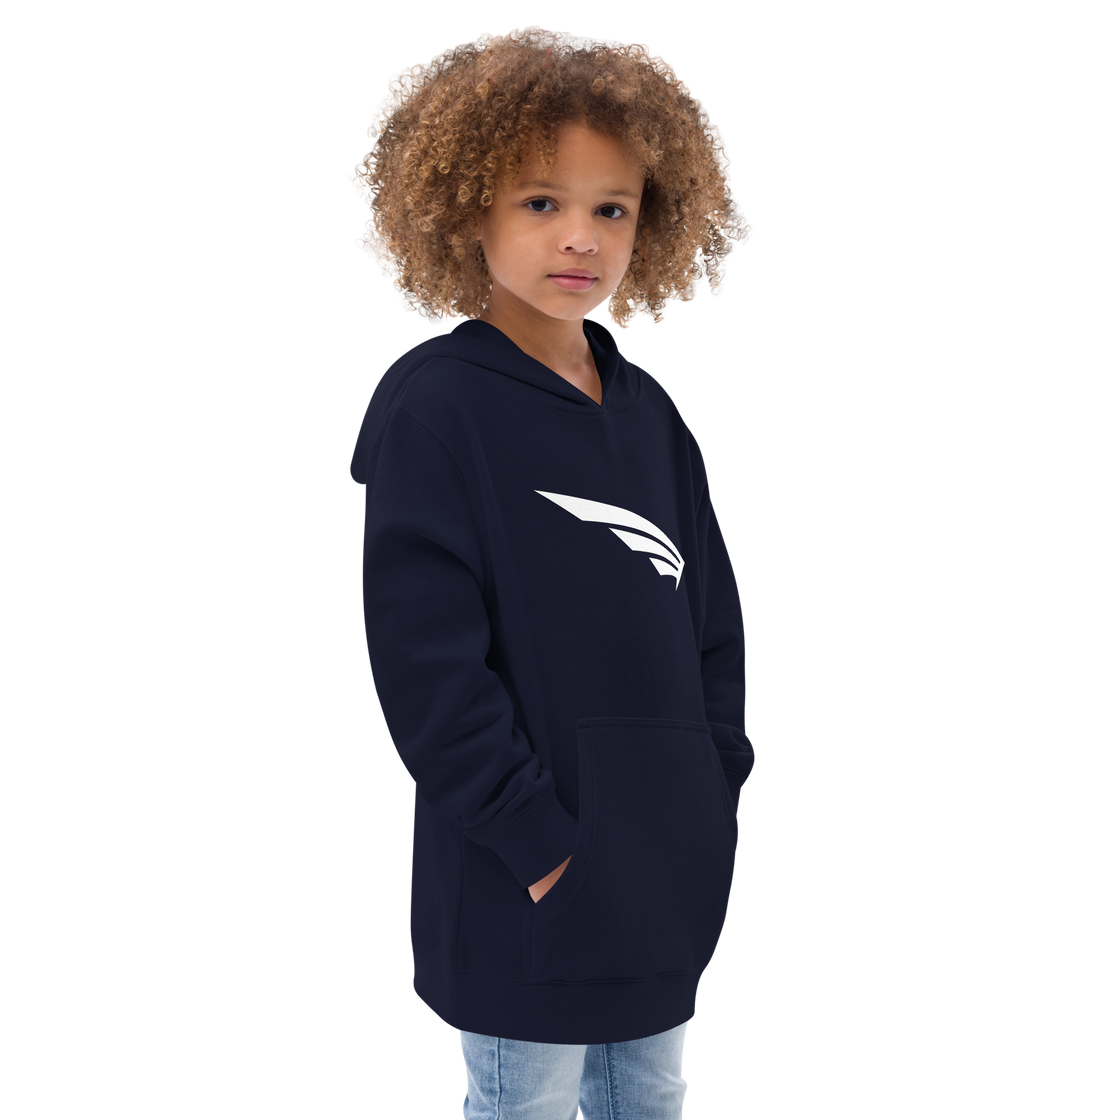 FLY³ Kids fleece hoodie | Flycube